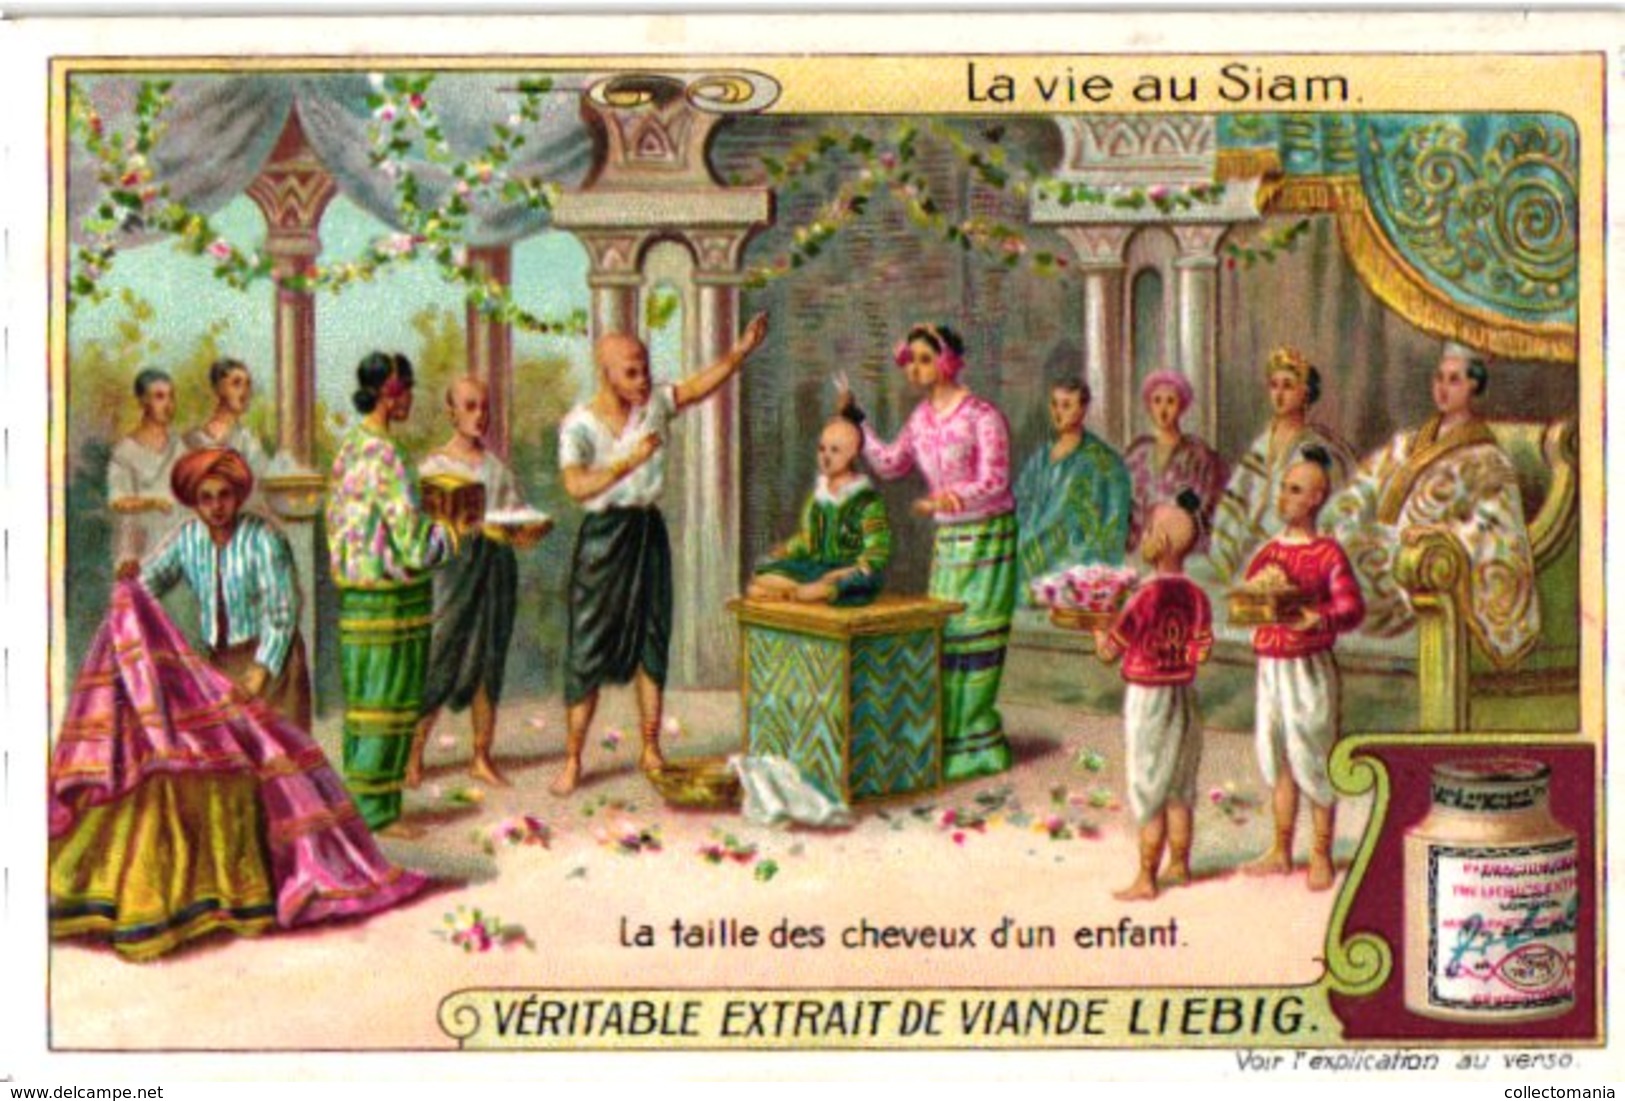 0982  Liebig 6 Cards- C1909-Life In Siam-Vie Au Siam-Cheveux D'Enfant-Enterrement-Eléphant Blanc-Noble-Chans-Bangkok - Liebig